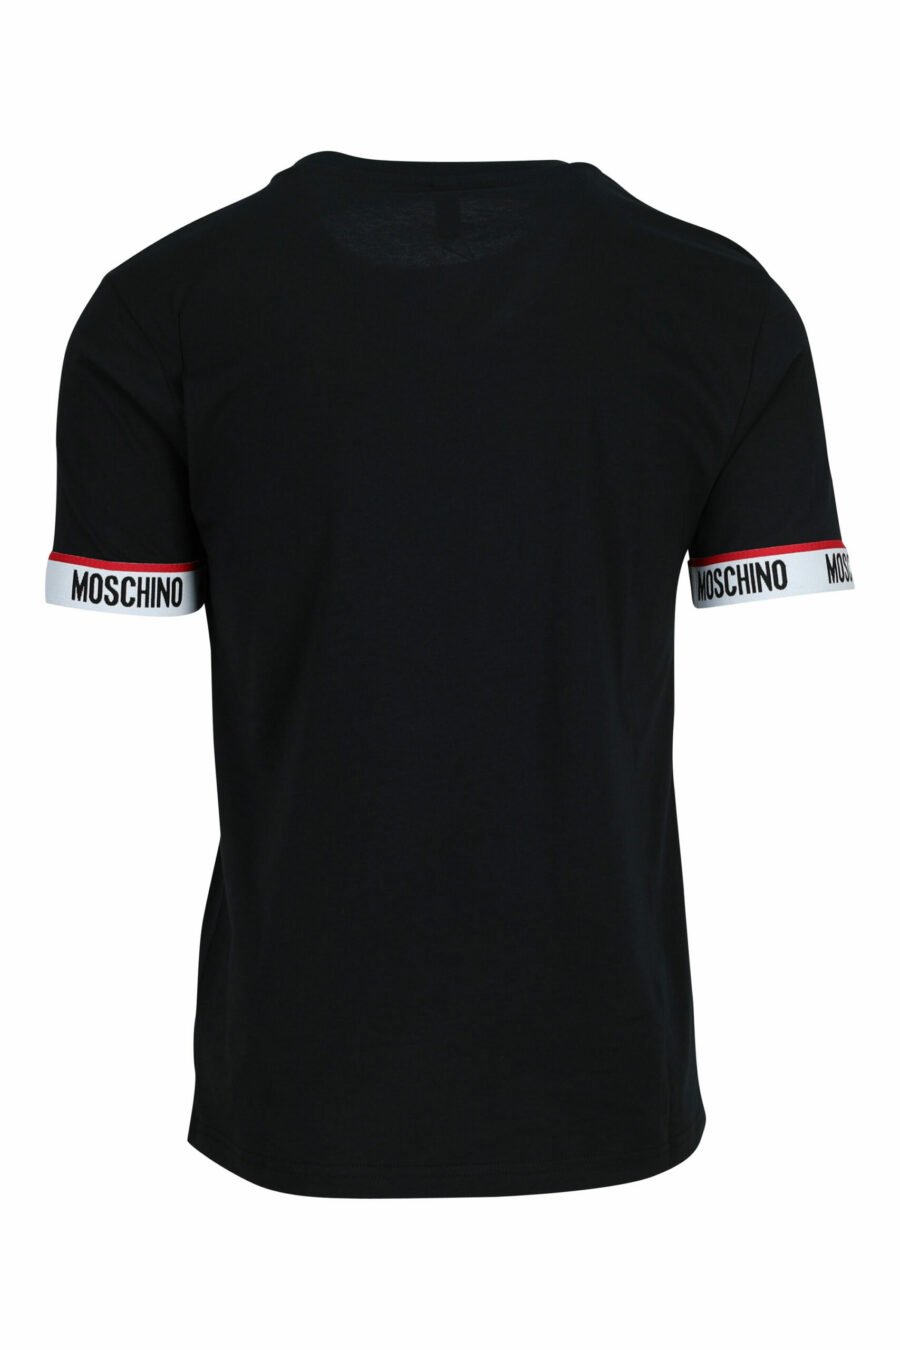 Schwarzes T-Shirt mit weißem Logo am Ärmel - 667113604855 1 skaliert